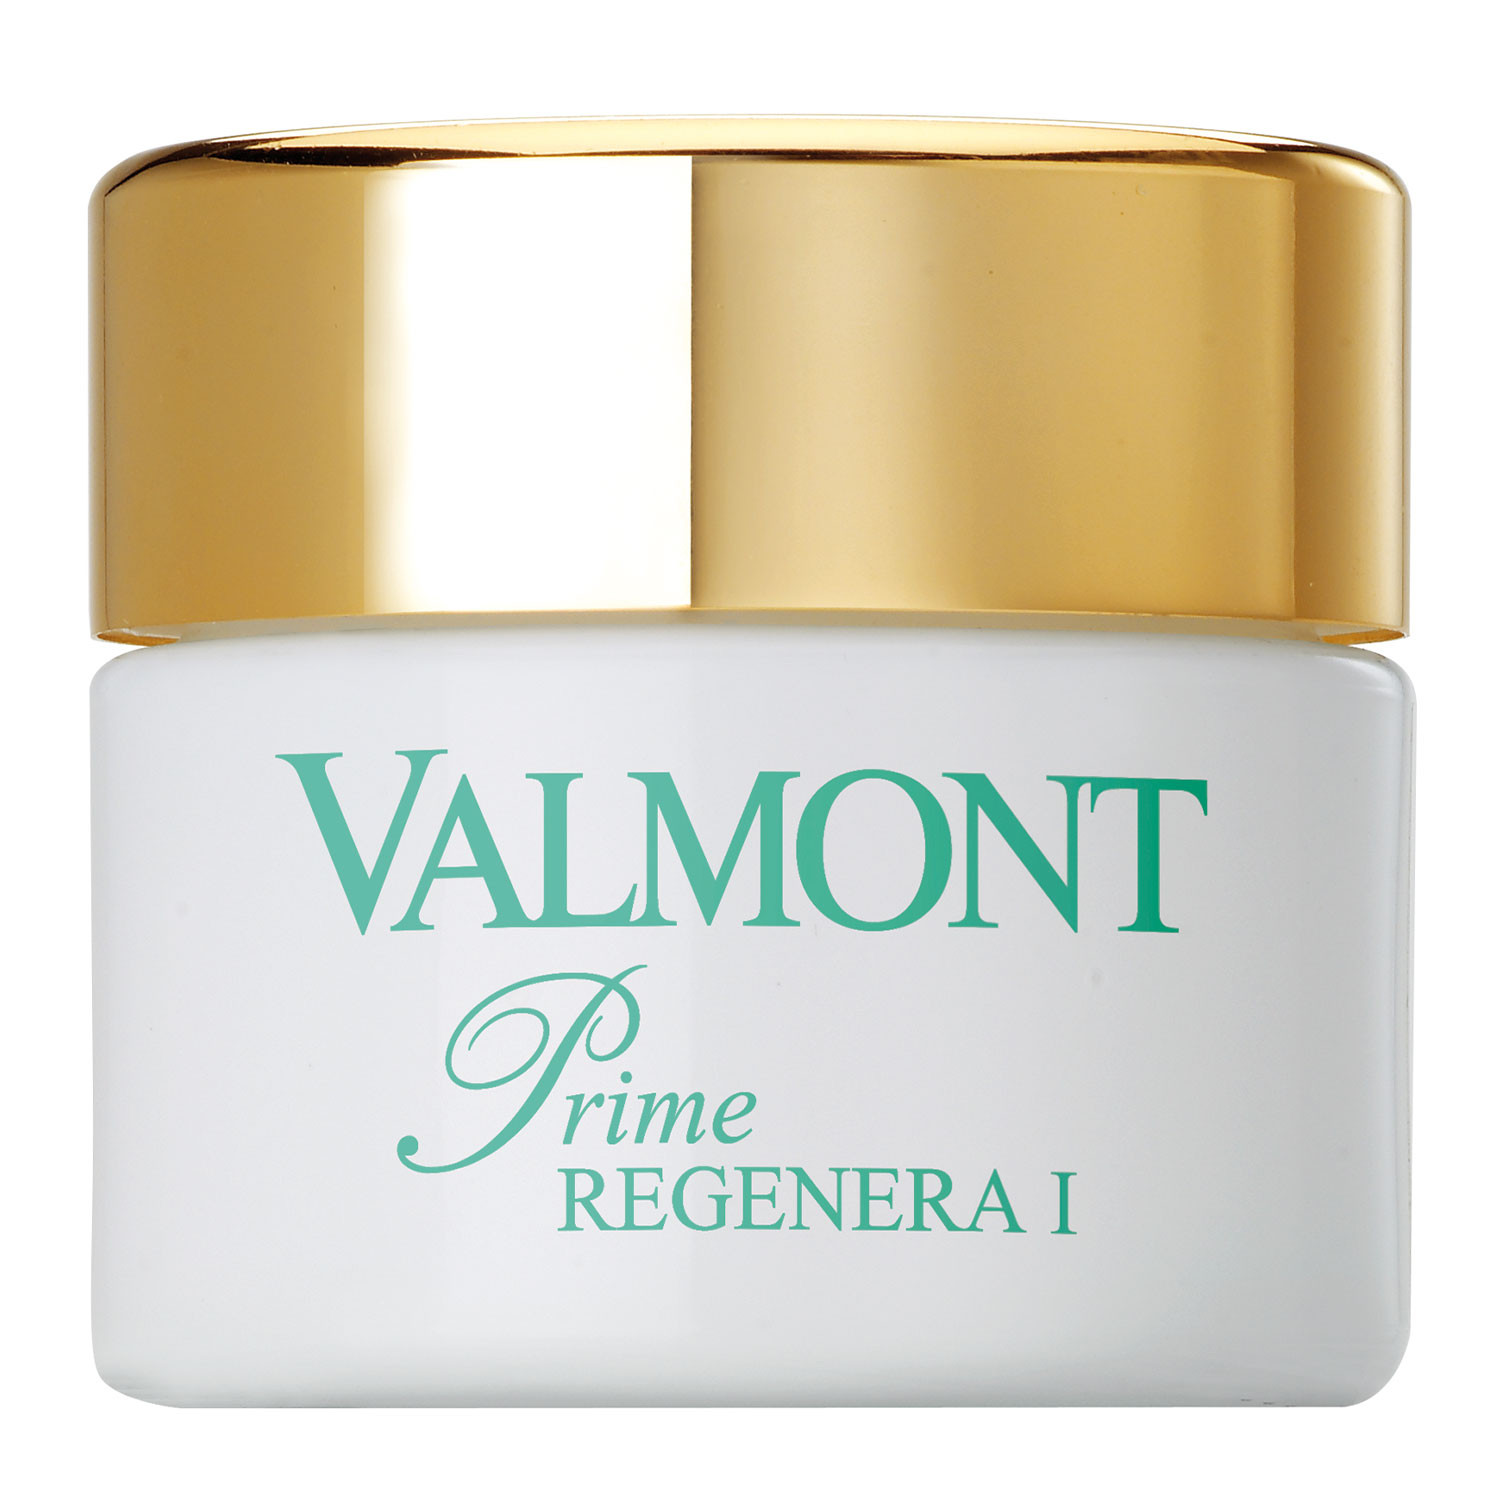 Valmont Prime Regenera I Преміум клітинний відновлюючий живильний крем